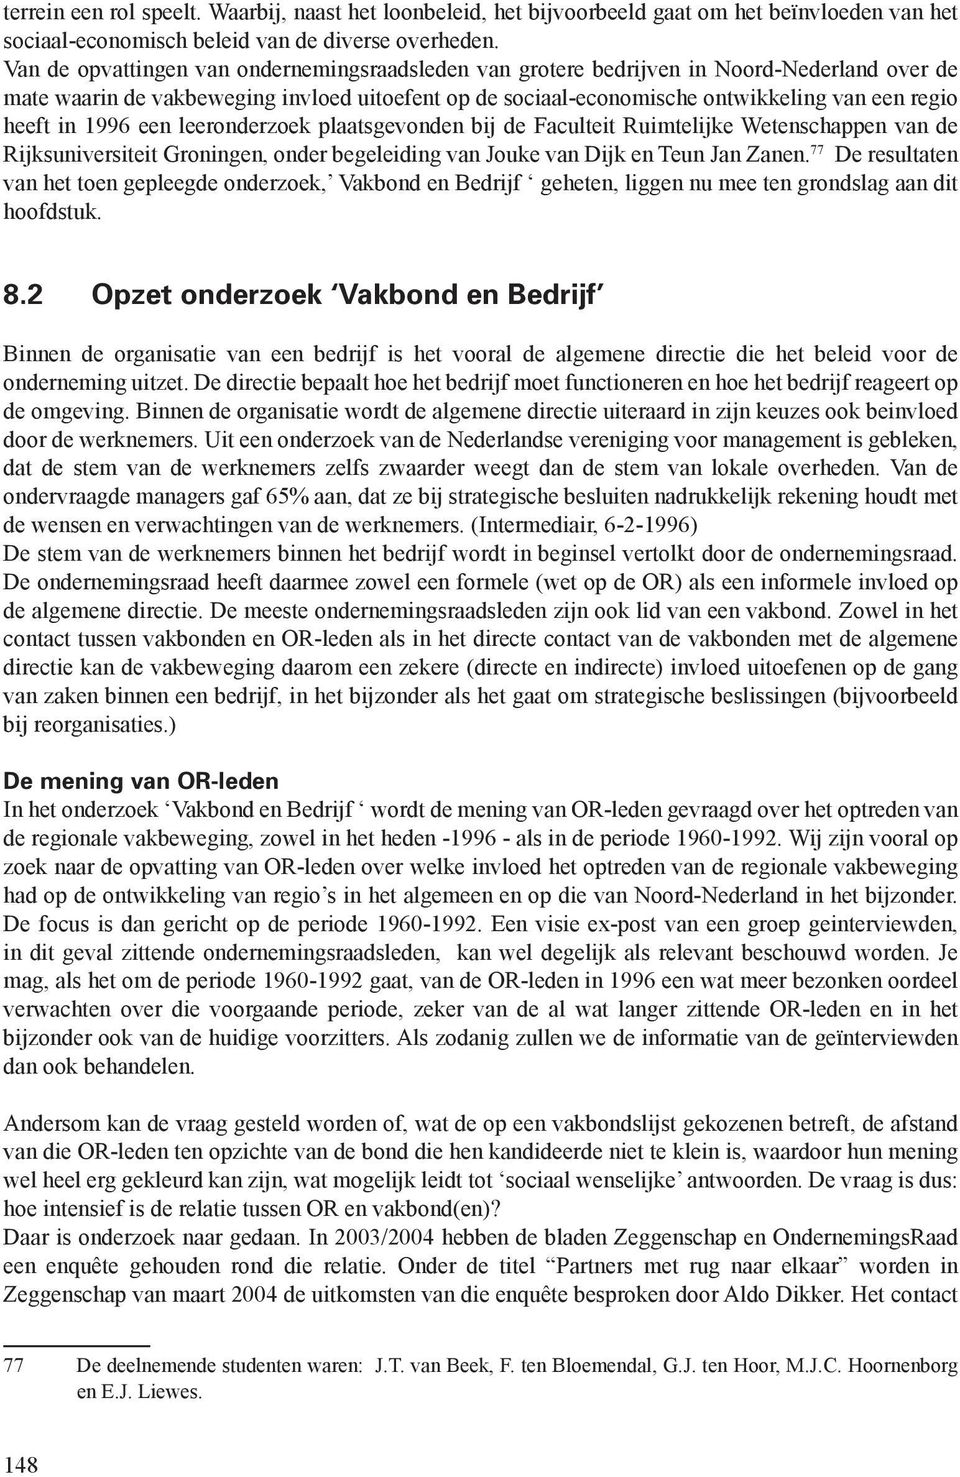 in 1996 een leeronderzoek plaatsgevonden bij de Faculteit Ruimtelijke Wetenschappen van de Rijksuniversiteit Groningen, onder begeleiding van Jouke van Dijk en Teun Jan Zanen.